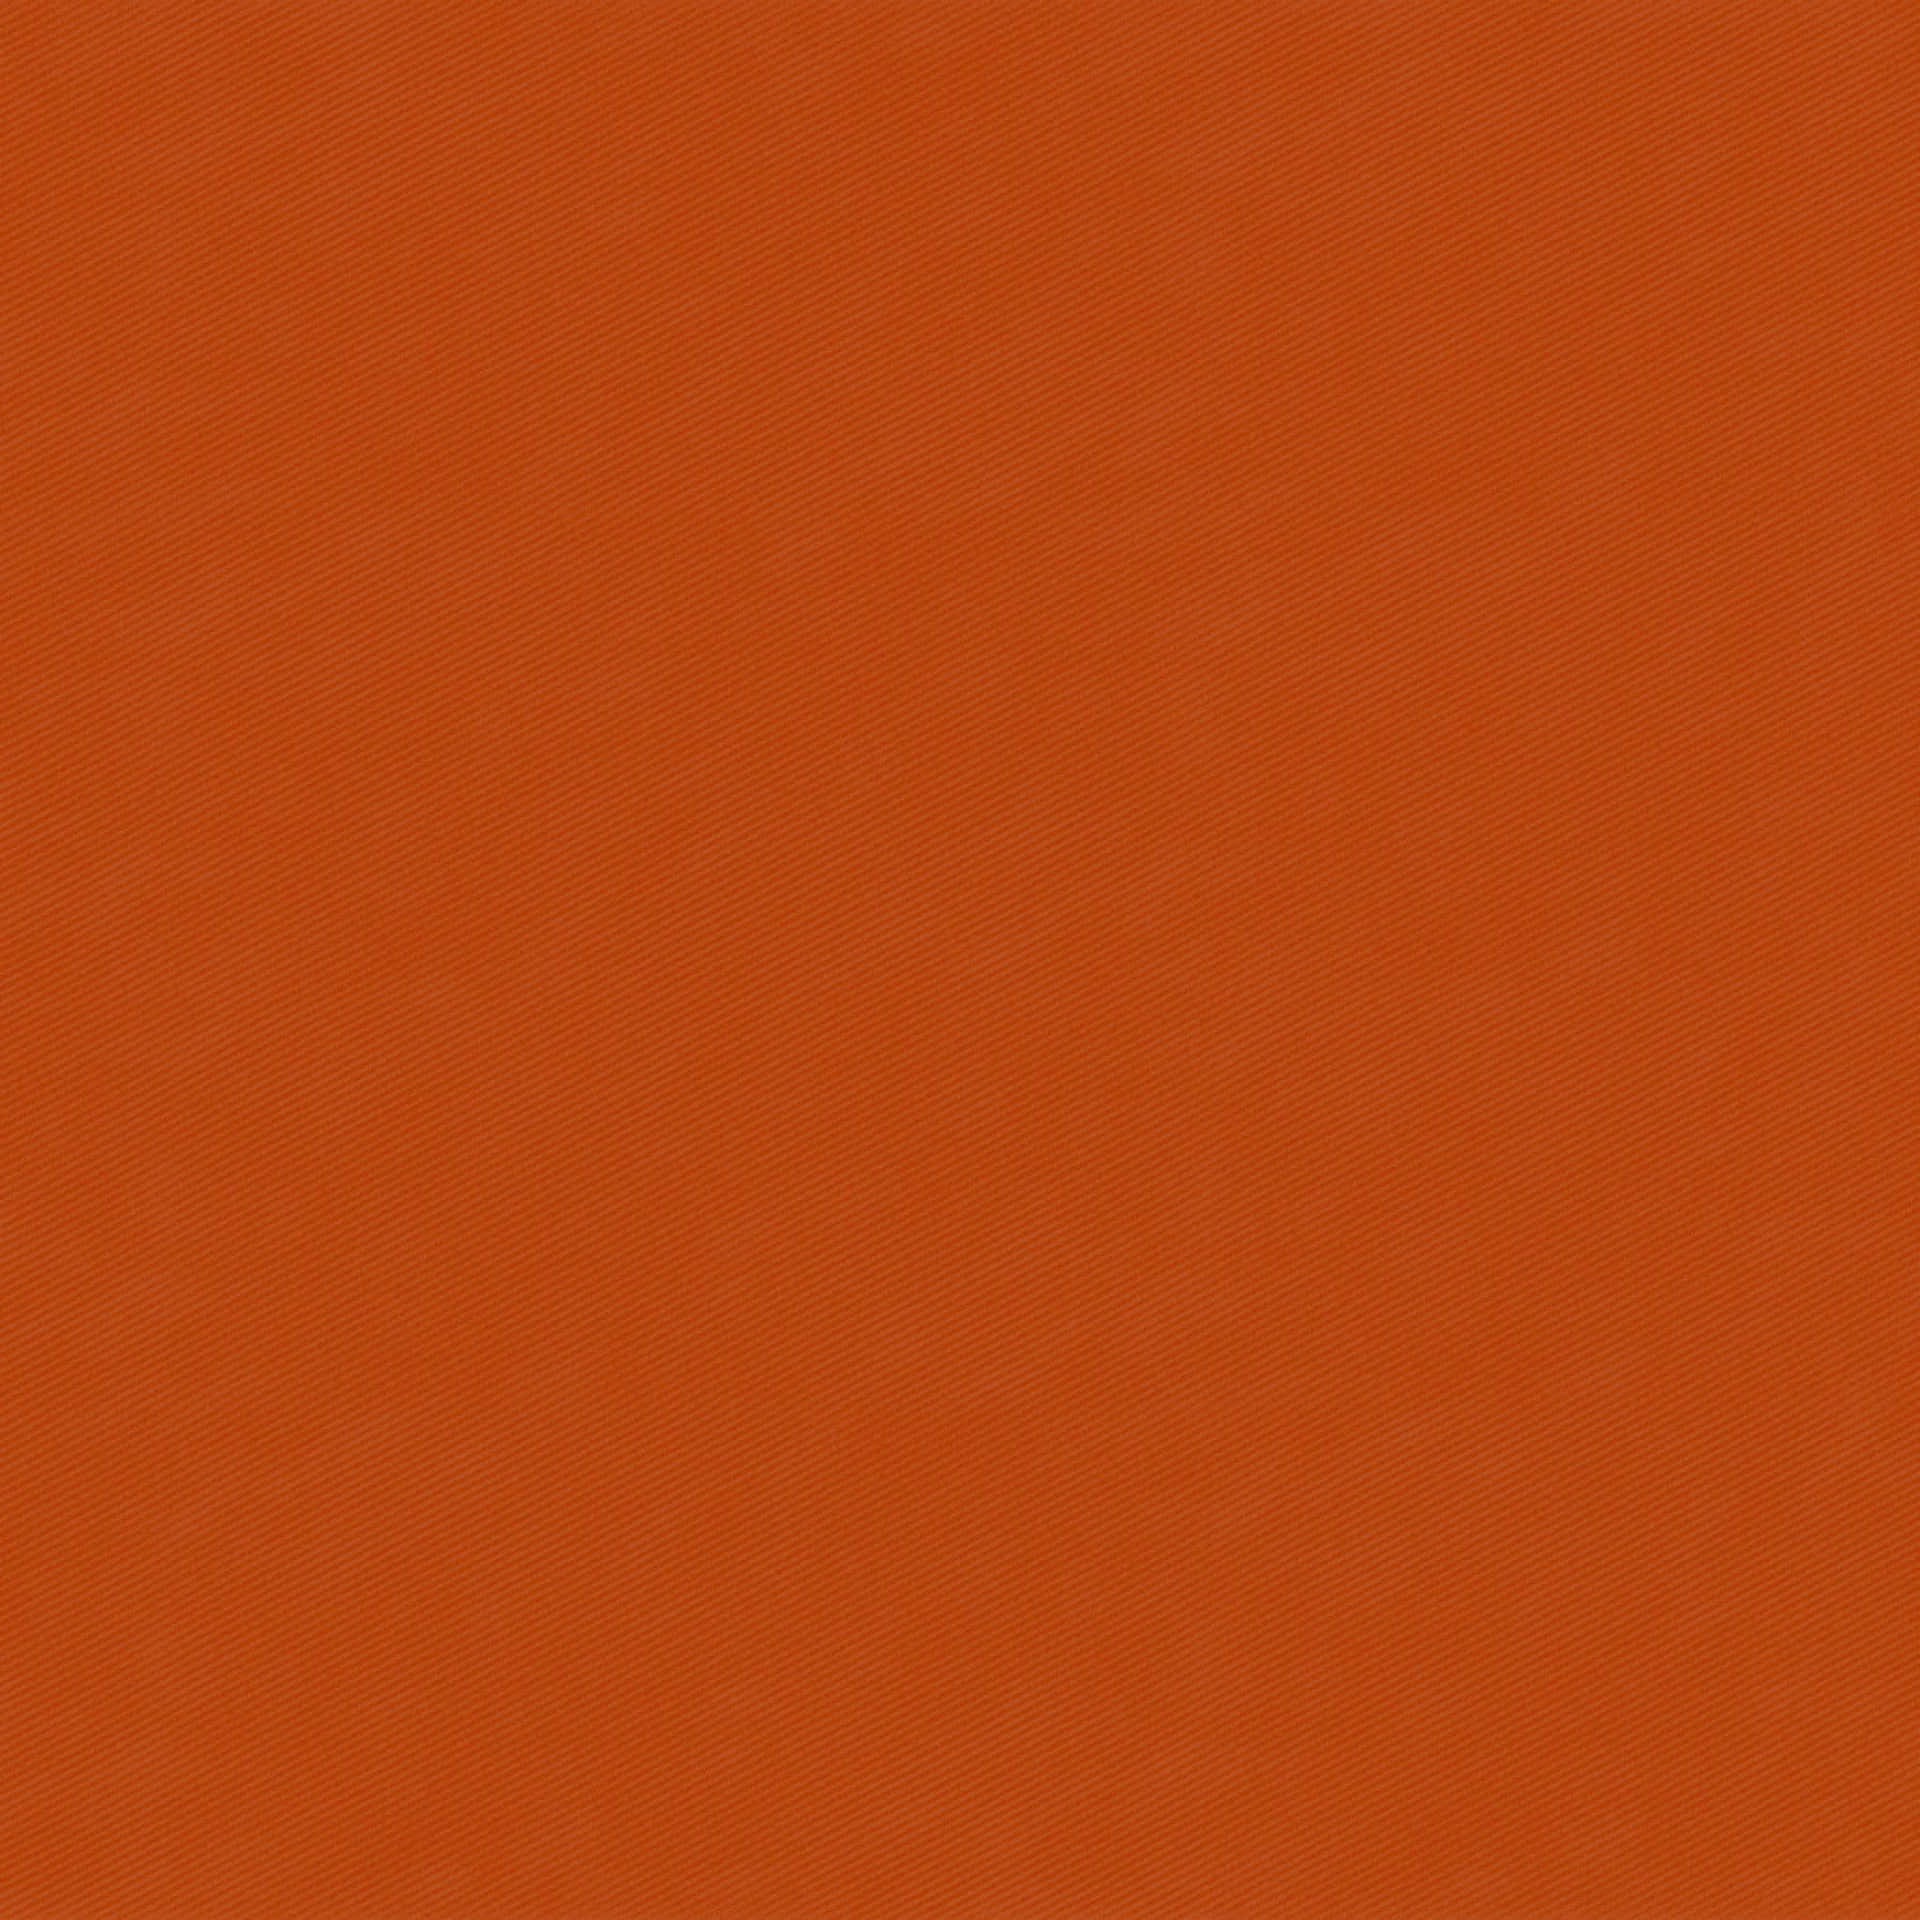 Rich and vibrant dark orange background